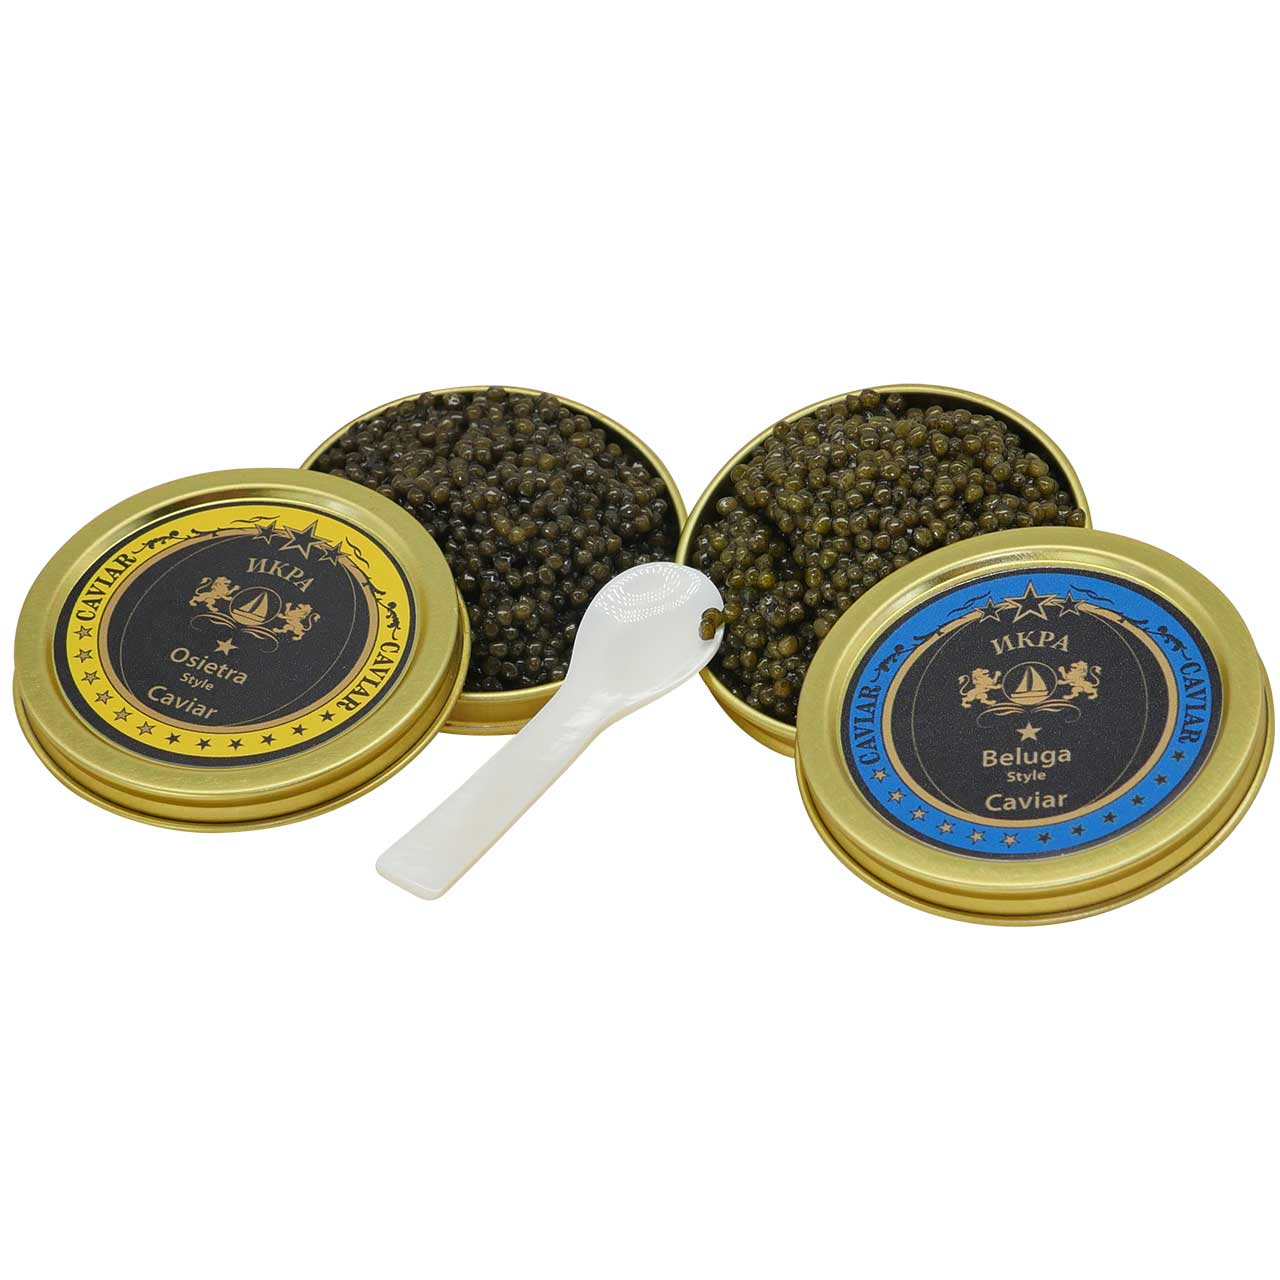 Kaviar Duo 2 x 30g (Osietra, Beluga Premier)